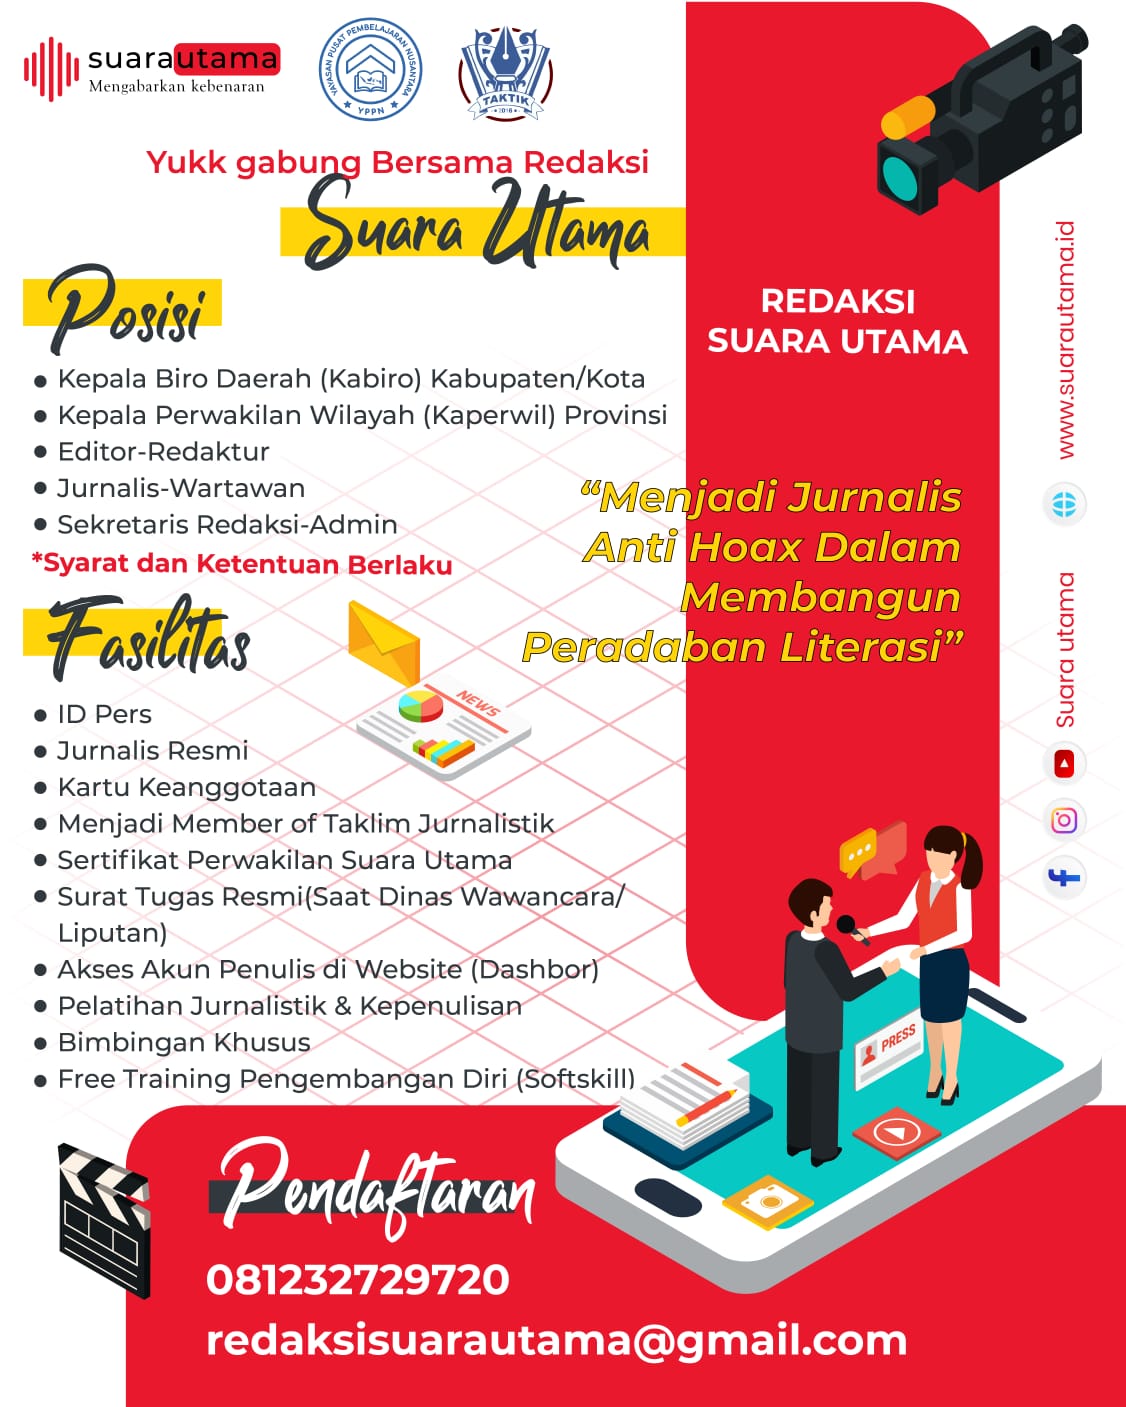 Kesempatan Menjadi Jurnalis dan Penulis Redaksi Suara Utama & Ini Kabar bersama Mas Andre Hariyanto. FOTO: Pamflet Poster RSU & RED-IK (SUARA UTAMA)